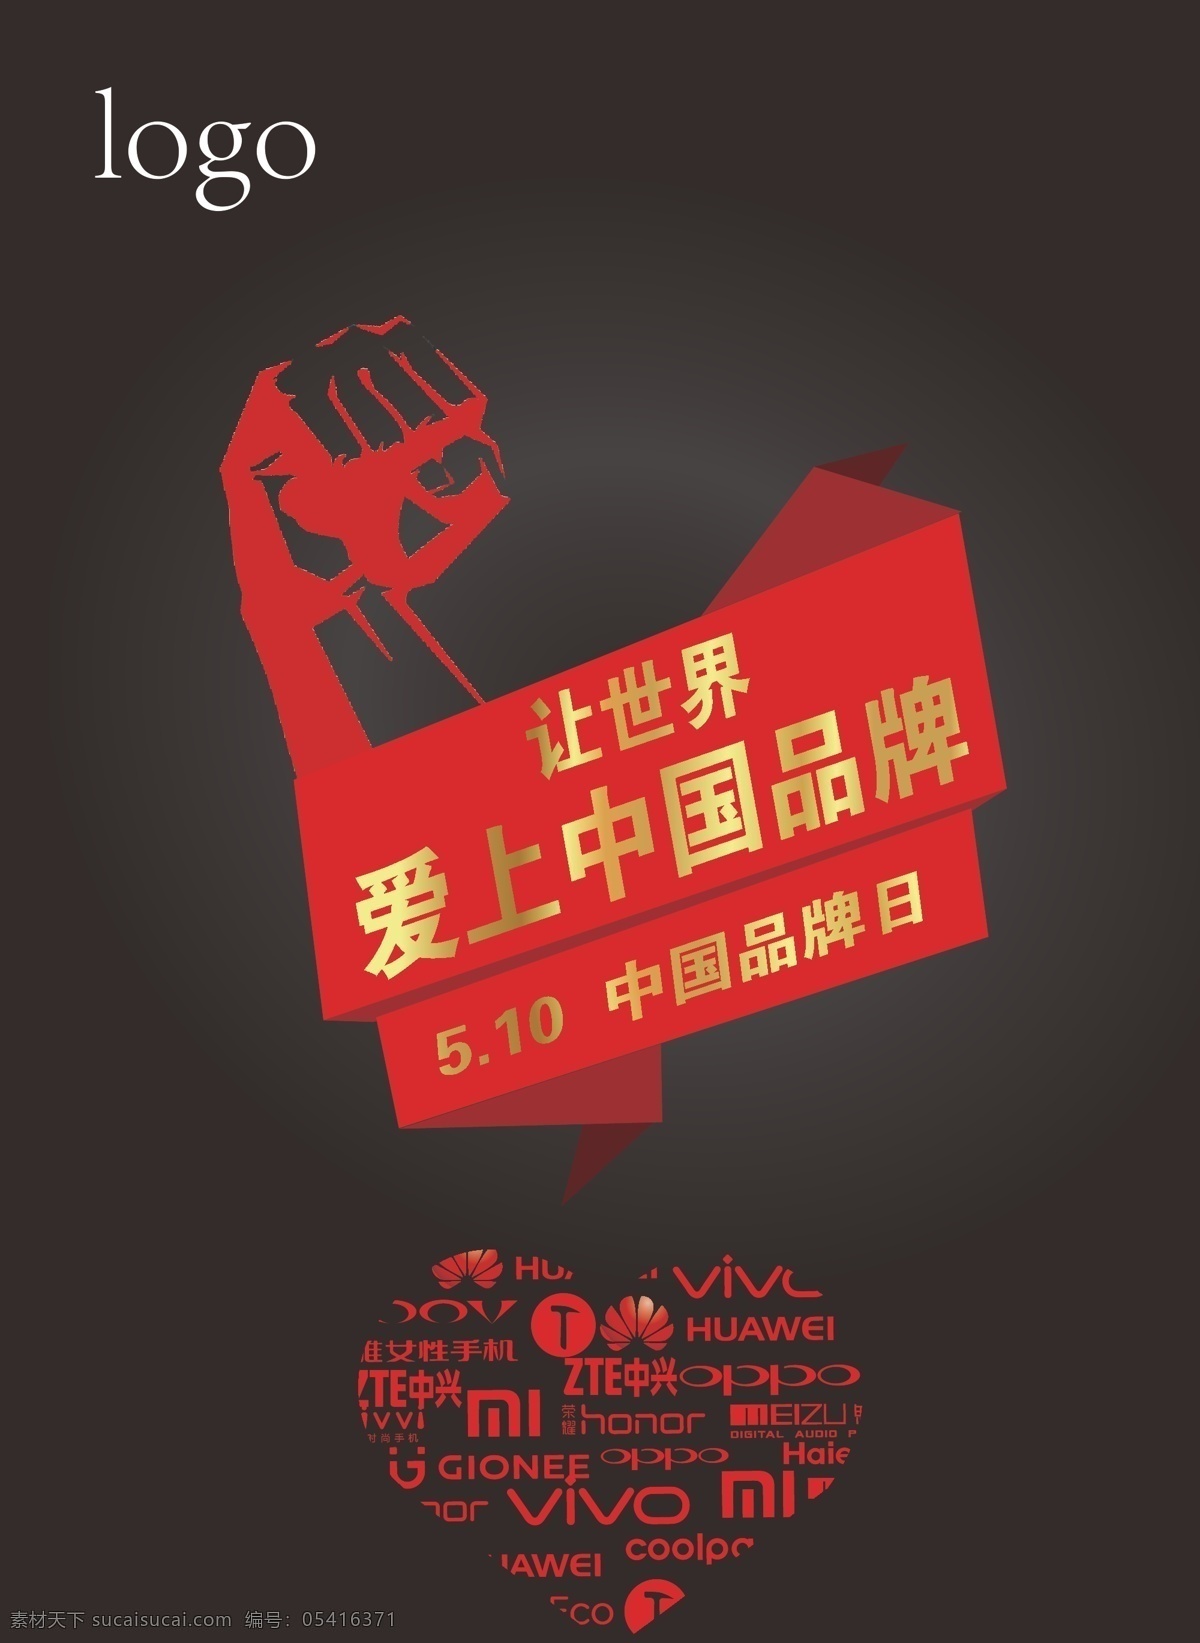 中国品牌日 中国 国产 中国品牌 品牌 logo 手机 国家品牌 品牌日